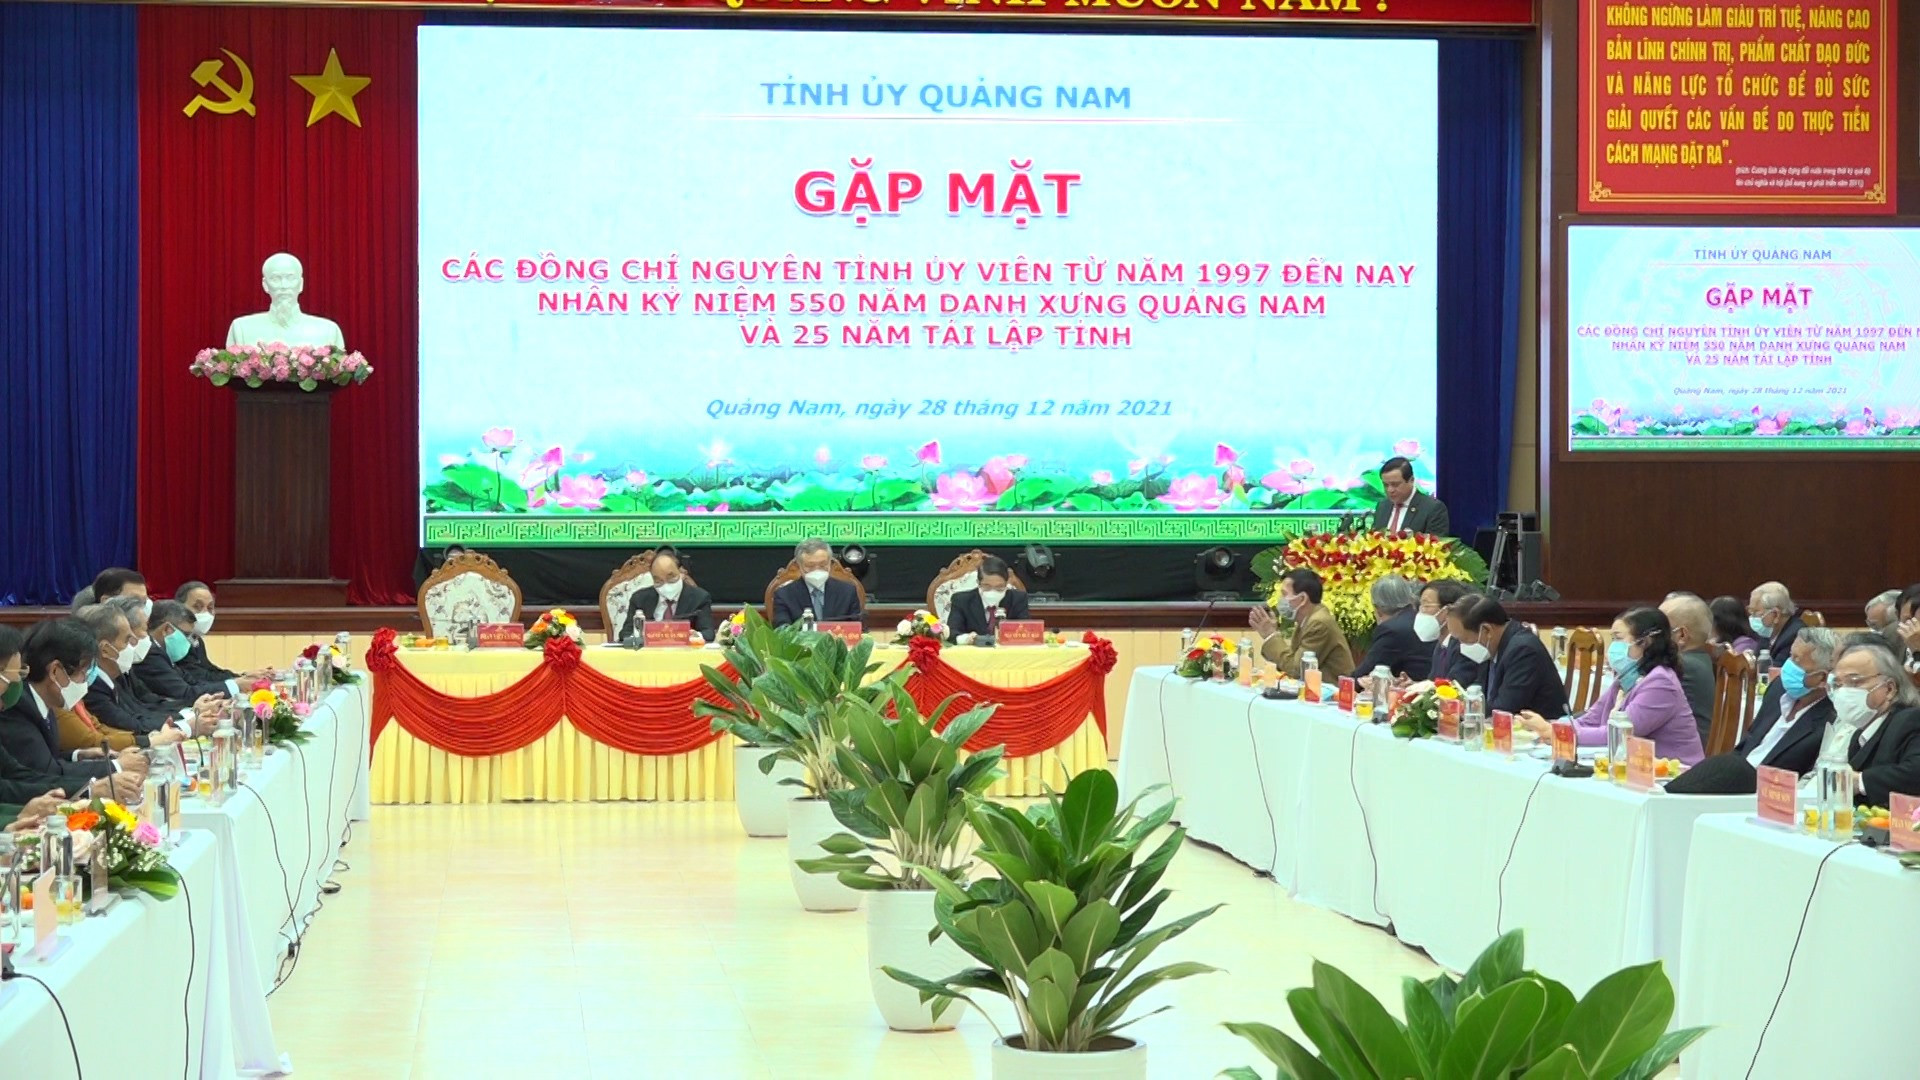 Tỉnh ủy Quảng Nam gặp mặt các đồng chí nguyên Tỉnh ủy viên từ năm 1997 đến nay nhân kỷ niệm 550 Danh xưng Quảng Nam và 25 năm tái lập tỉnh.